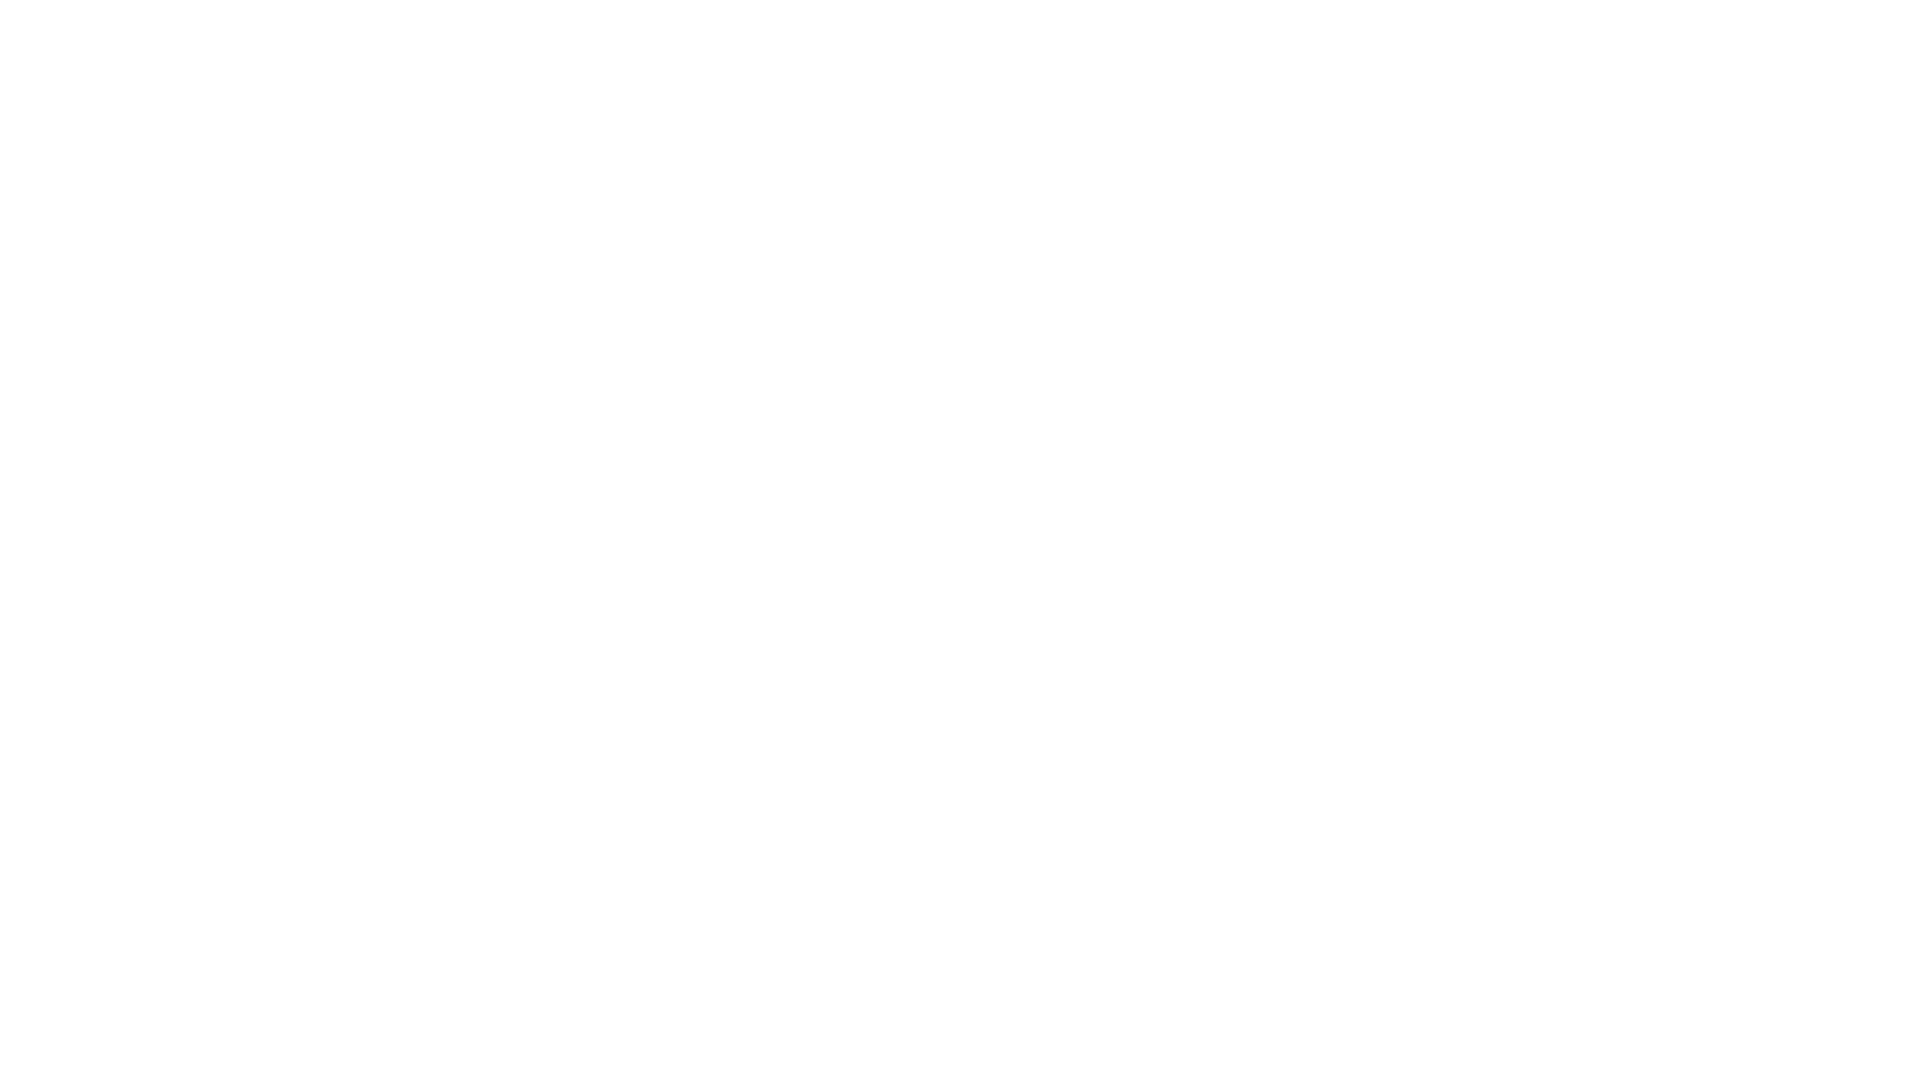 Mosaic Hair Group